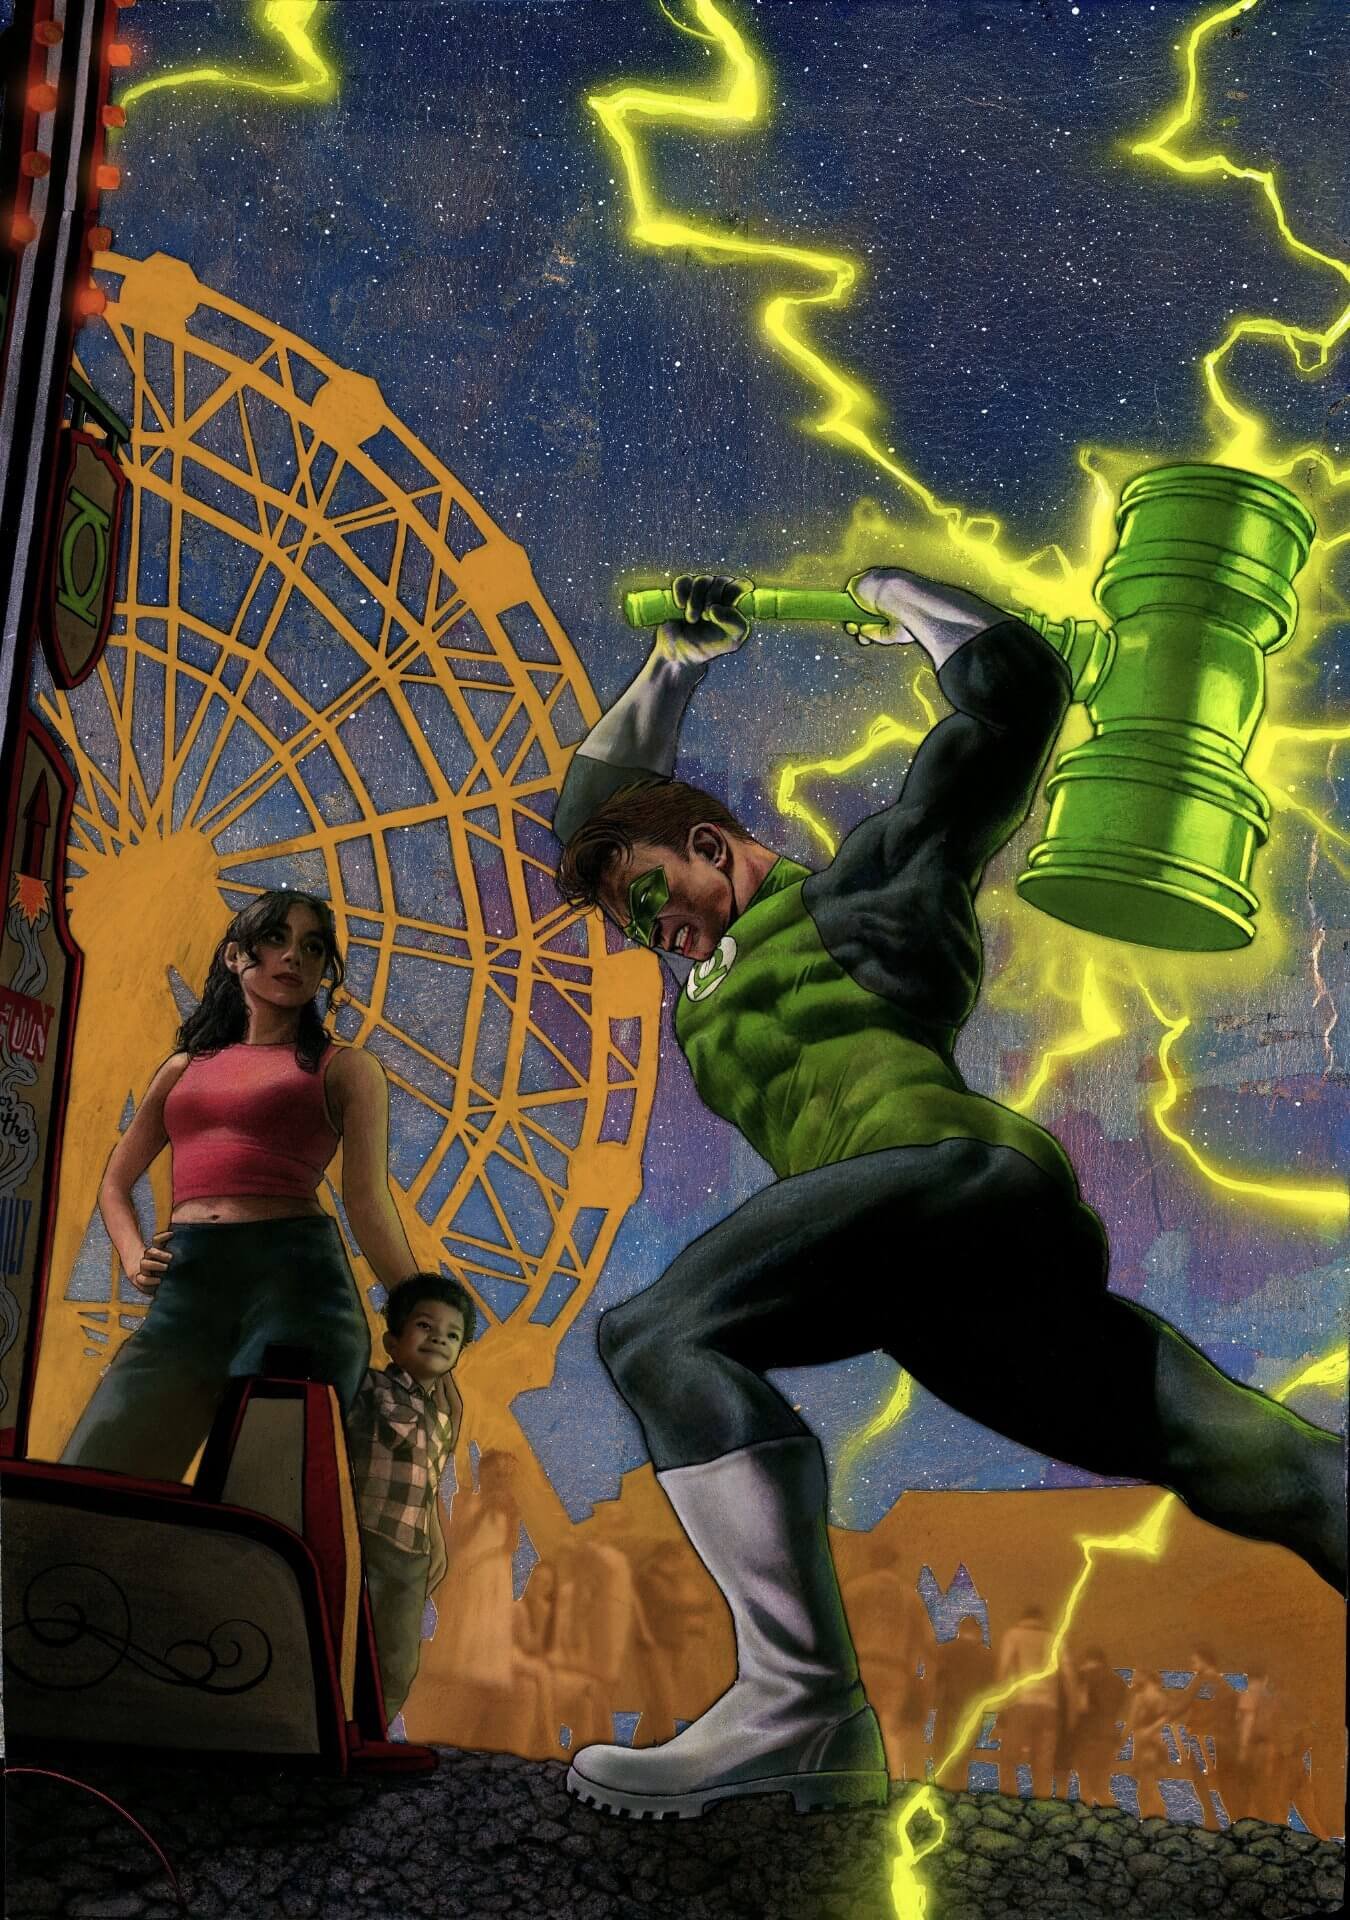 Couverture variante de Green Lantern 1 par Ariel Colon, la nouvelle série Dawn of DC